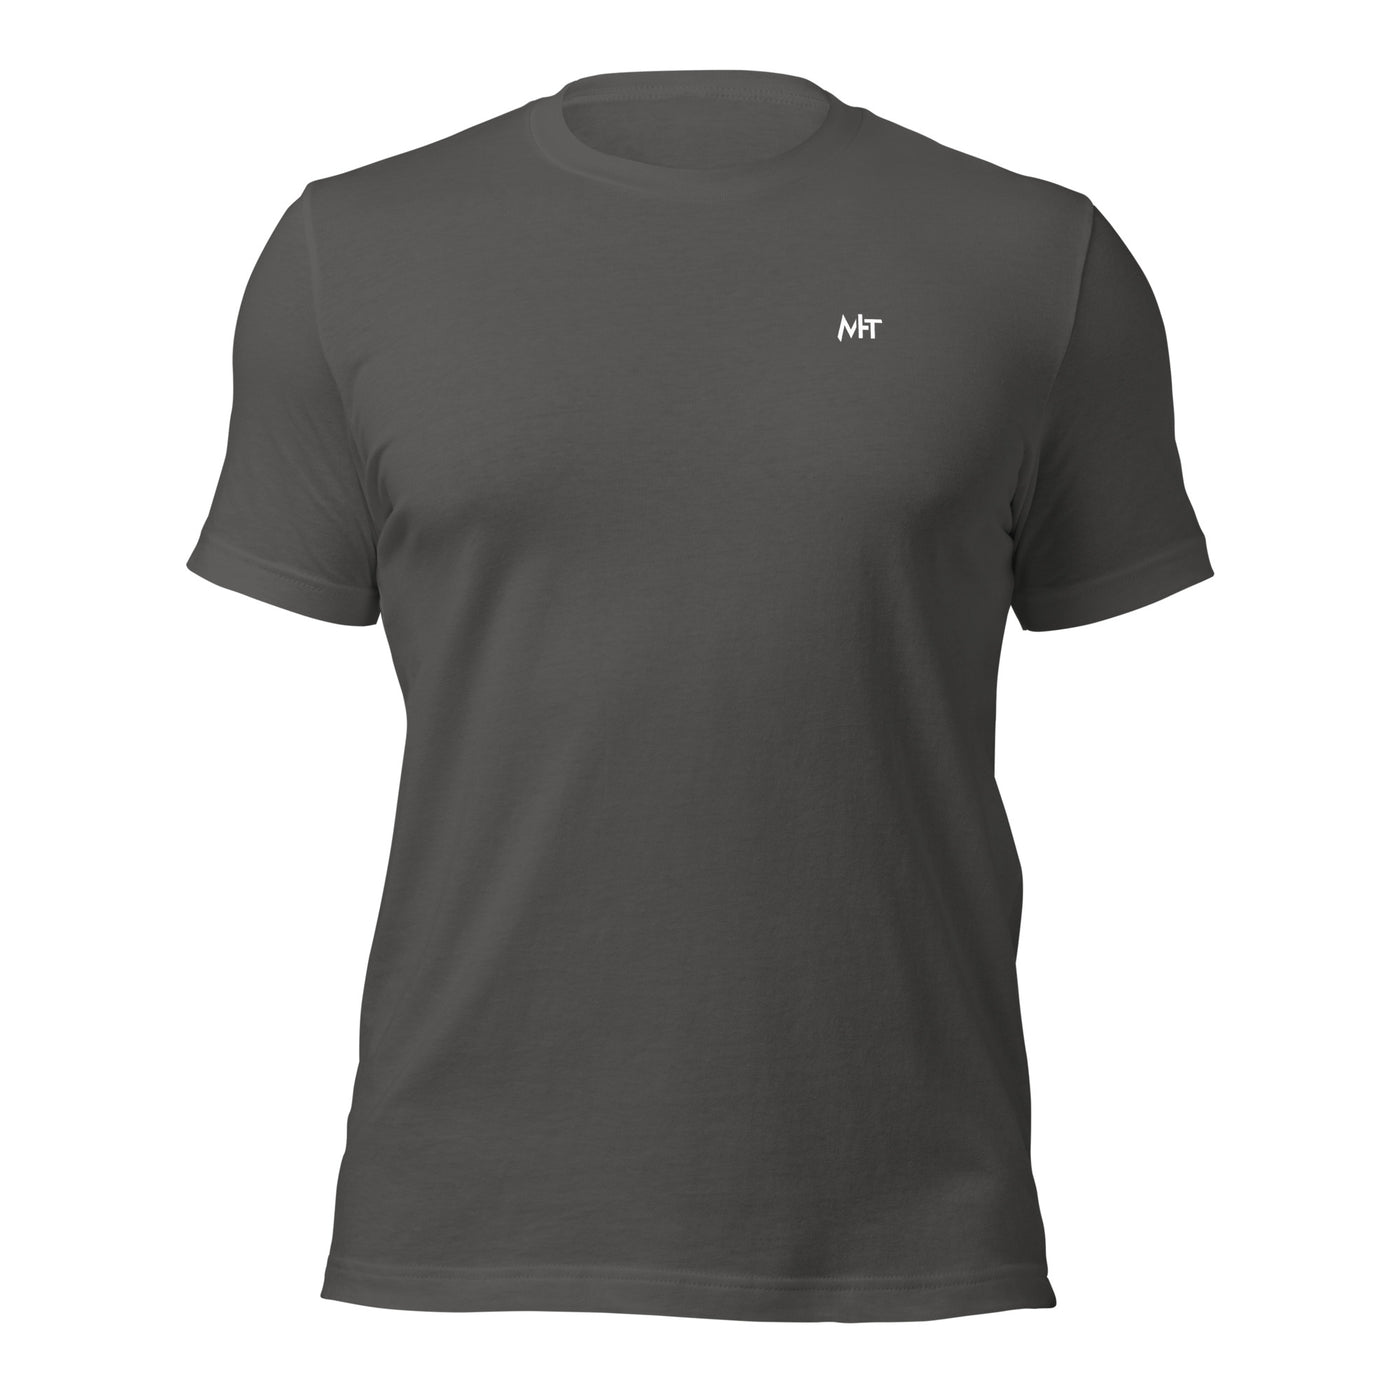 Gamer Mode On - Unisex t-shirt (back print)